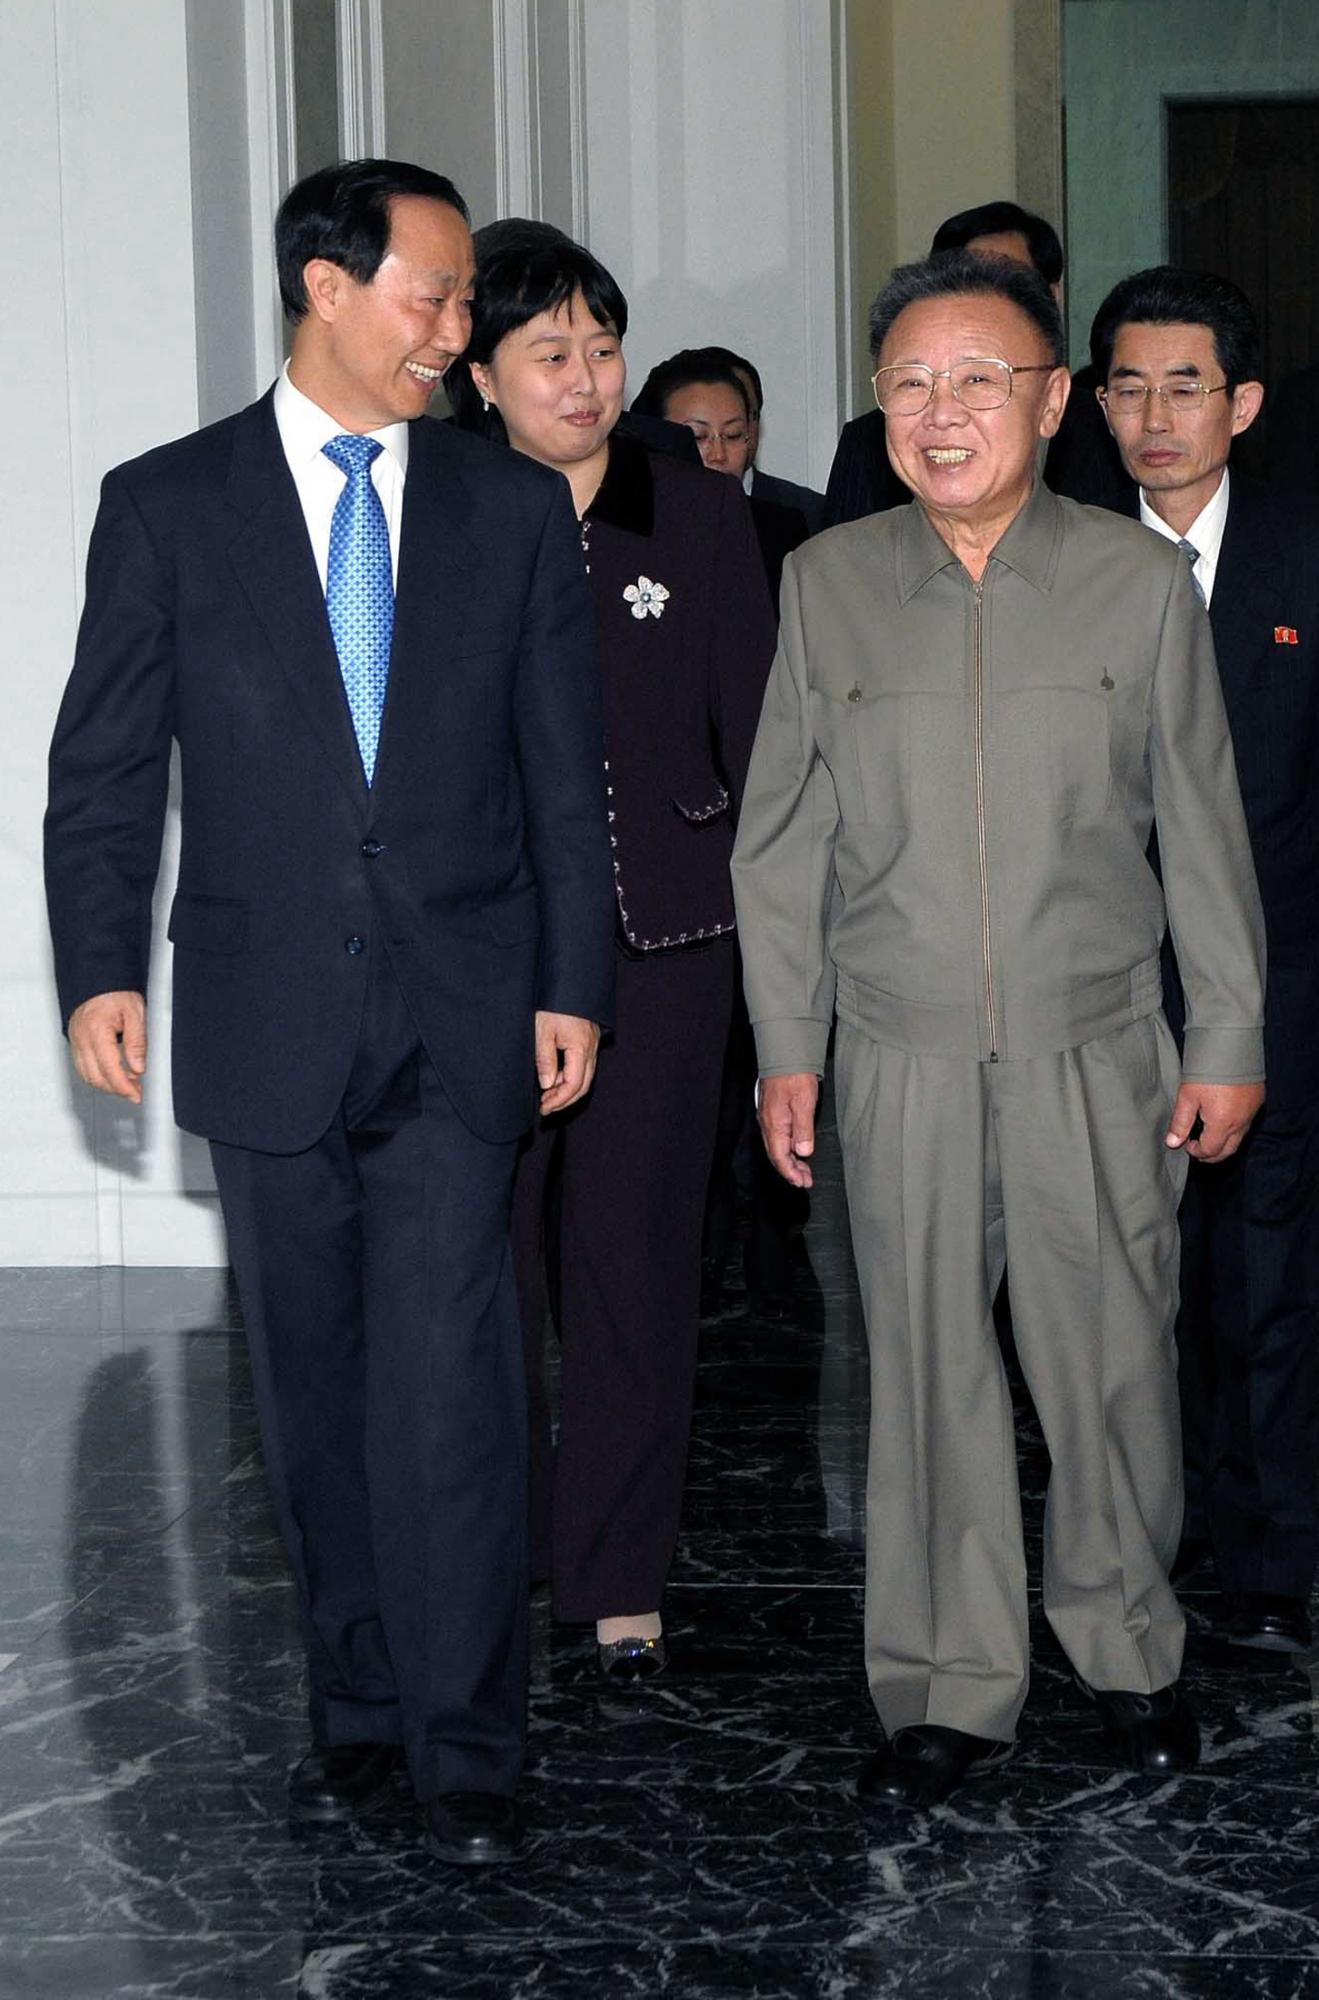 Party liaison head visits DPRK, meets Kim